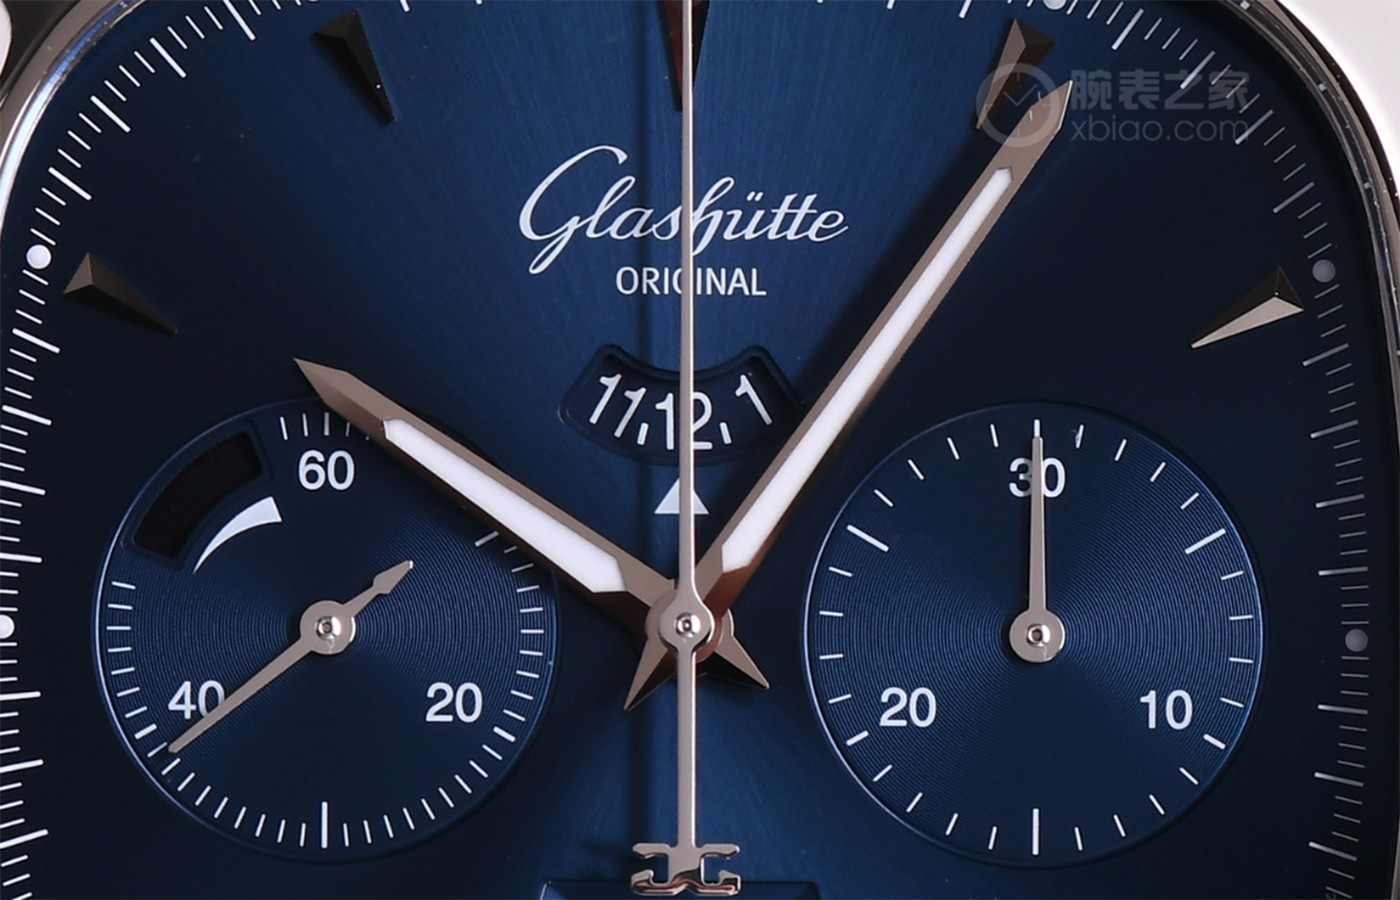 尽显高级制表魅力 评测格拉苏蒂原创七零年代大日历计时腕表